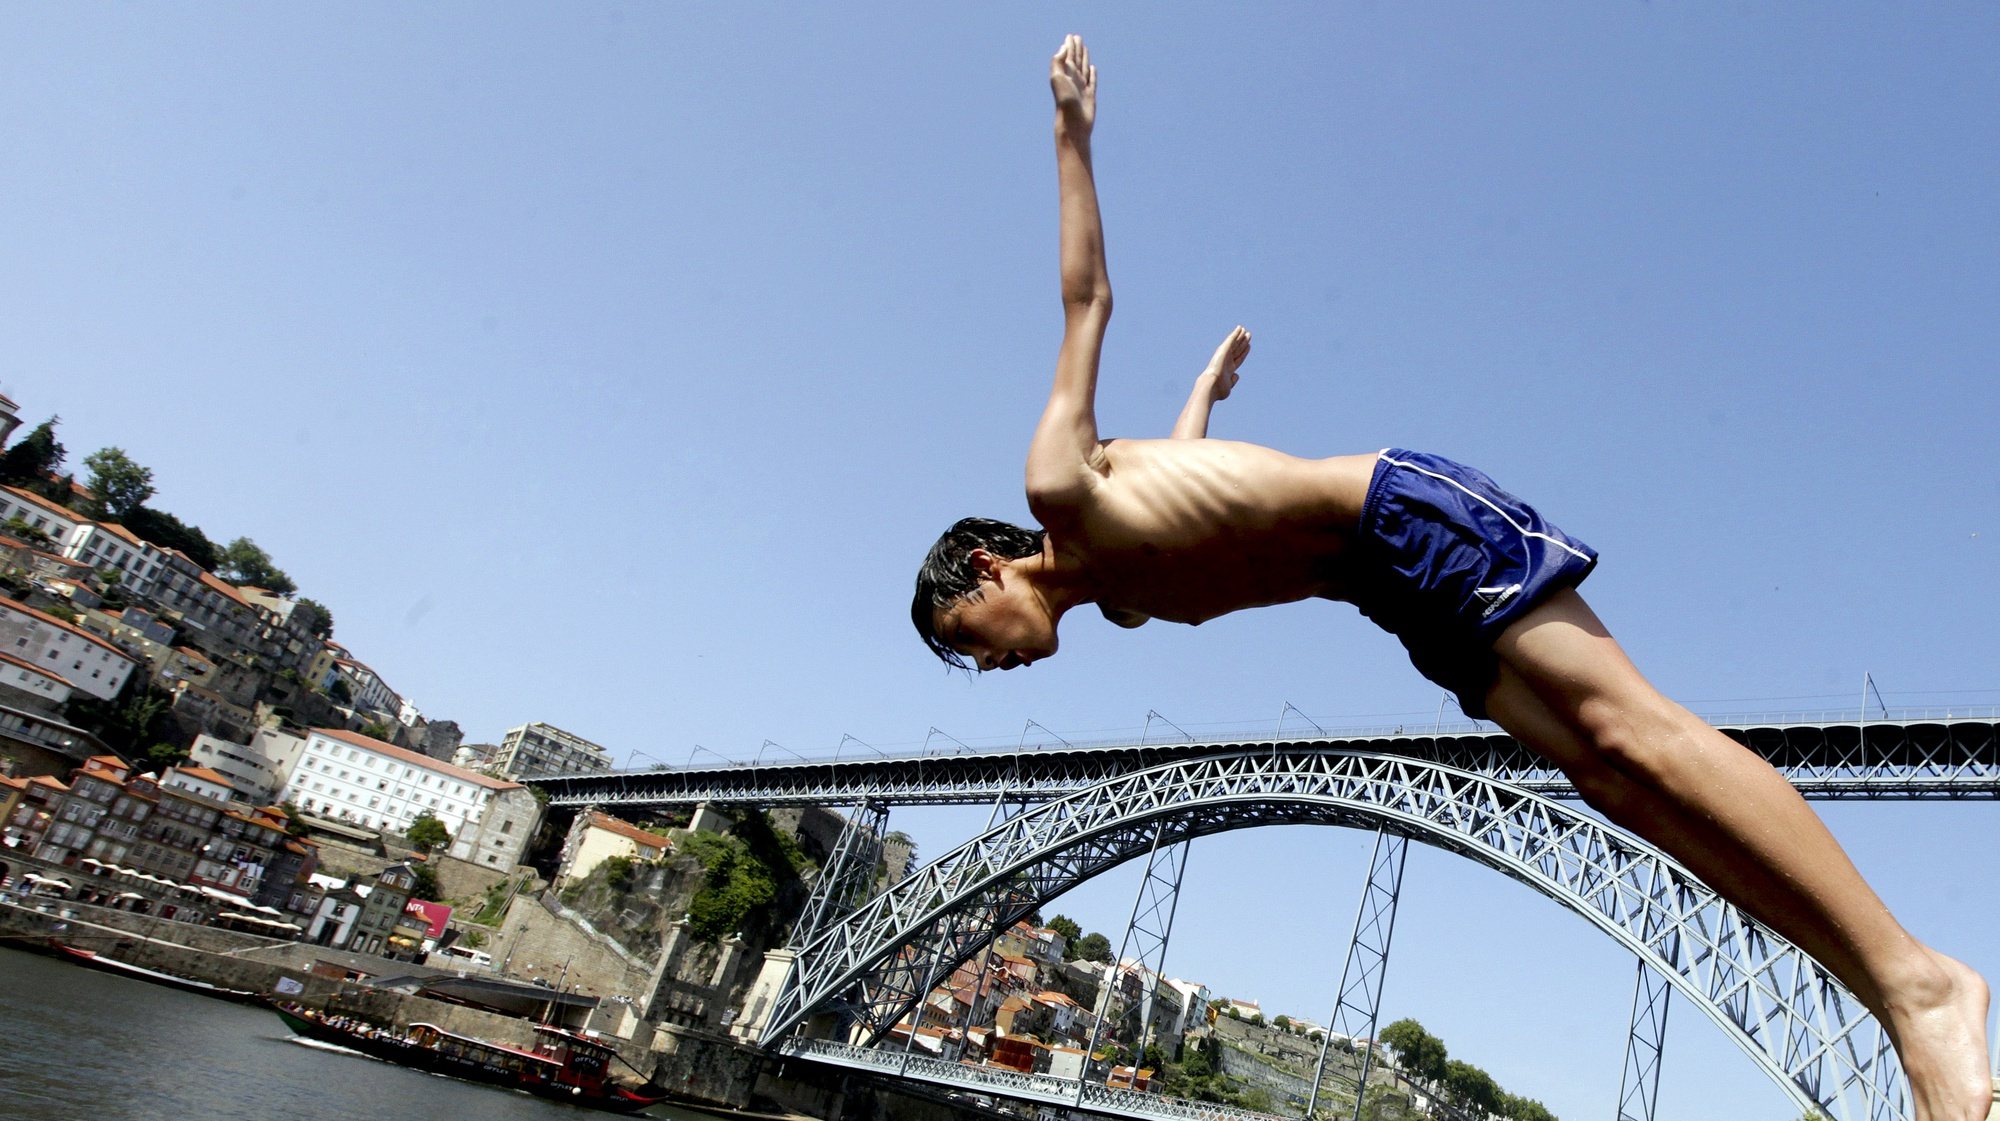 Um rapaz salta para o rio Douro no Porto, 31 de maio de 2012. Temperaturas elevadas na cidade do Porto levaram crianças a tomar banho no rio Douro. JOSE COELHO / LUSA